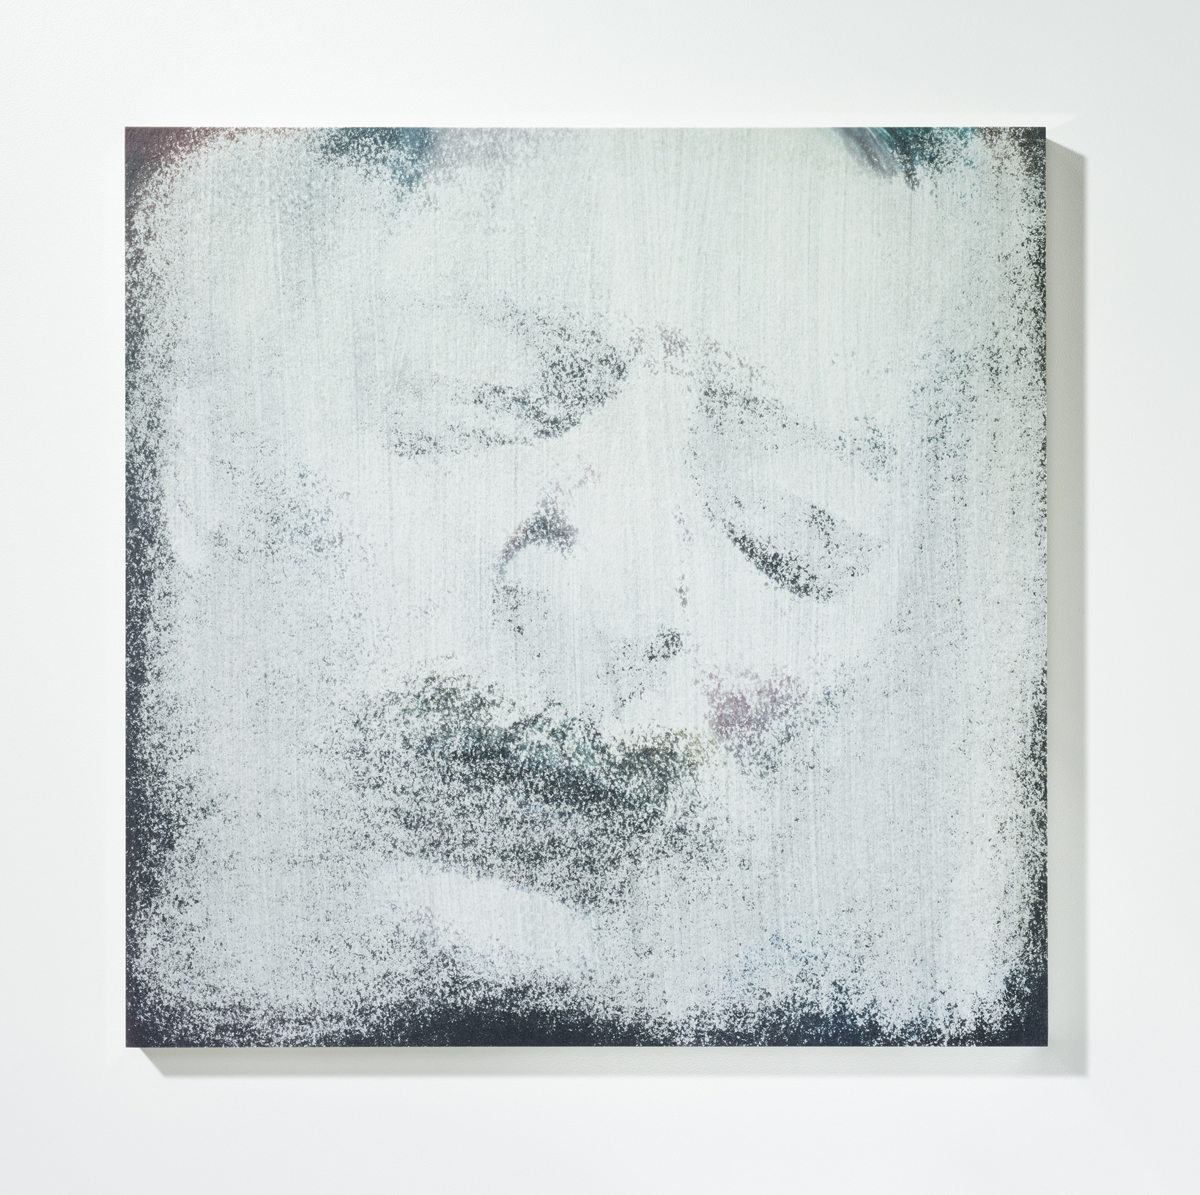 Löschung 6, 201630 x 30 cmPigmentprint, gelöscht, gefirnisst, kaschiert auf Acrylglas